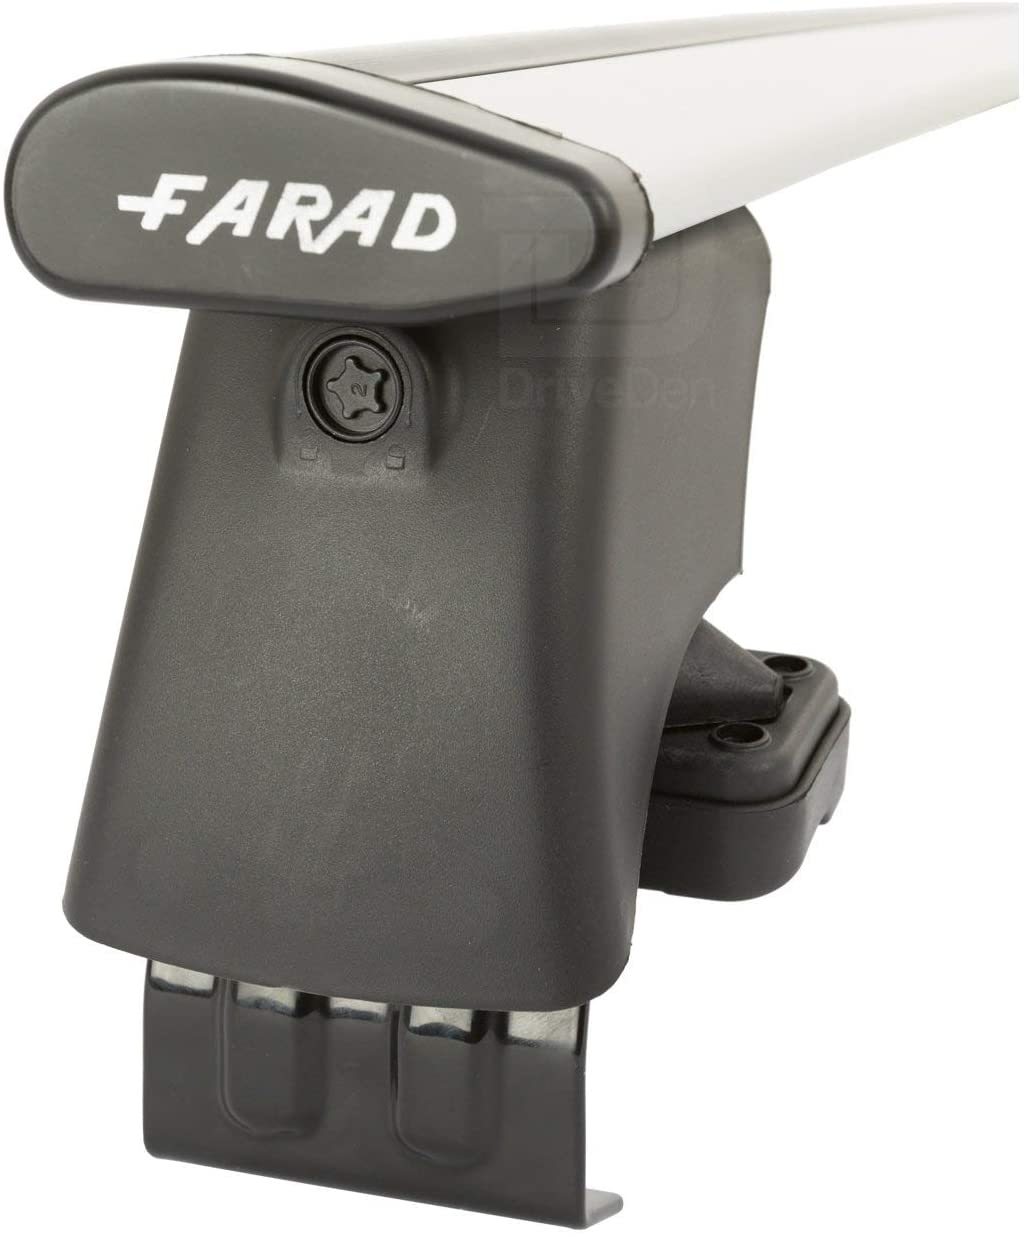 FARAD-Kit H2 per barre portatutto - Renault Fluence 2009> (senza corrimano)